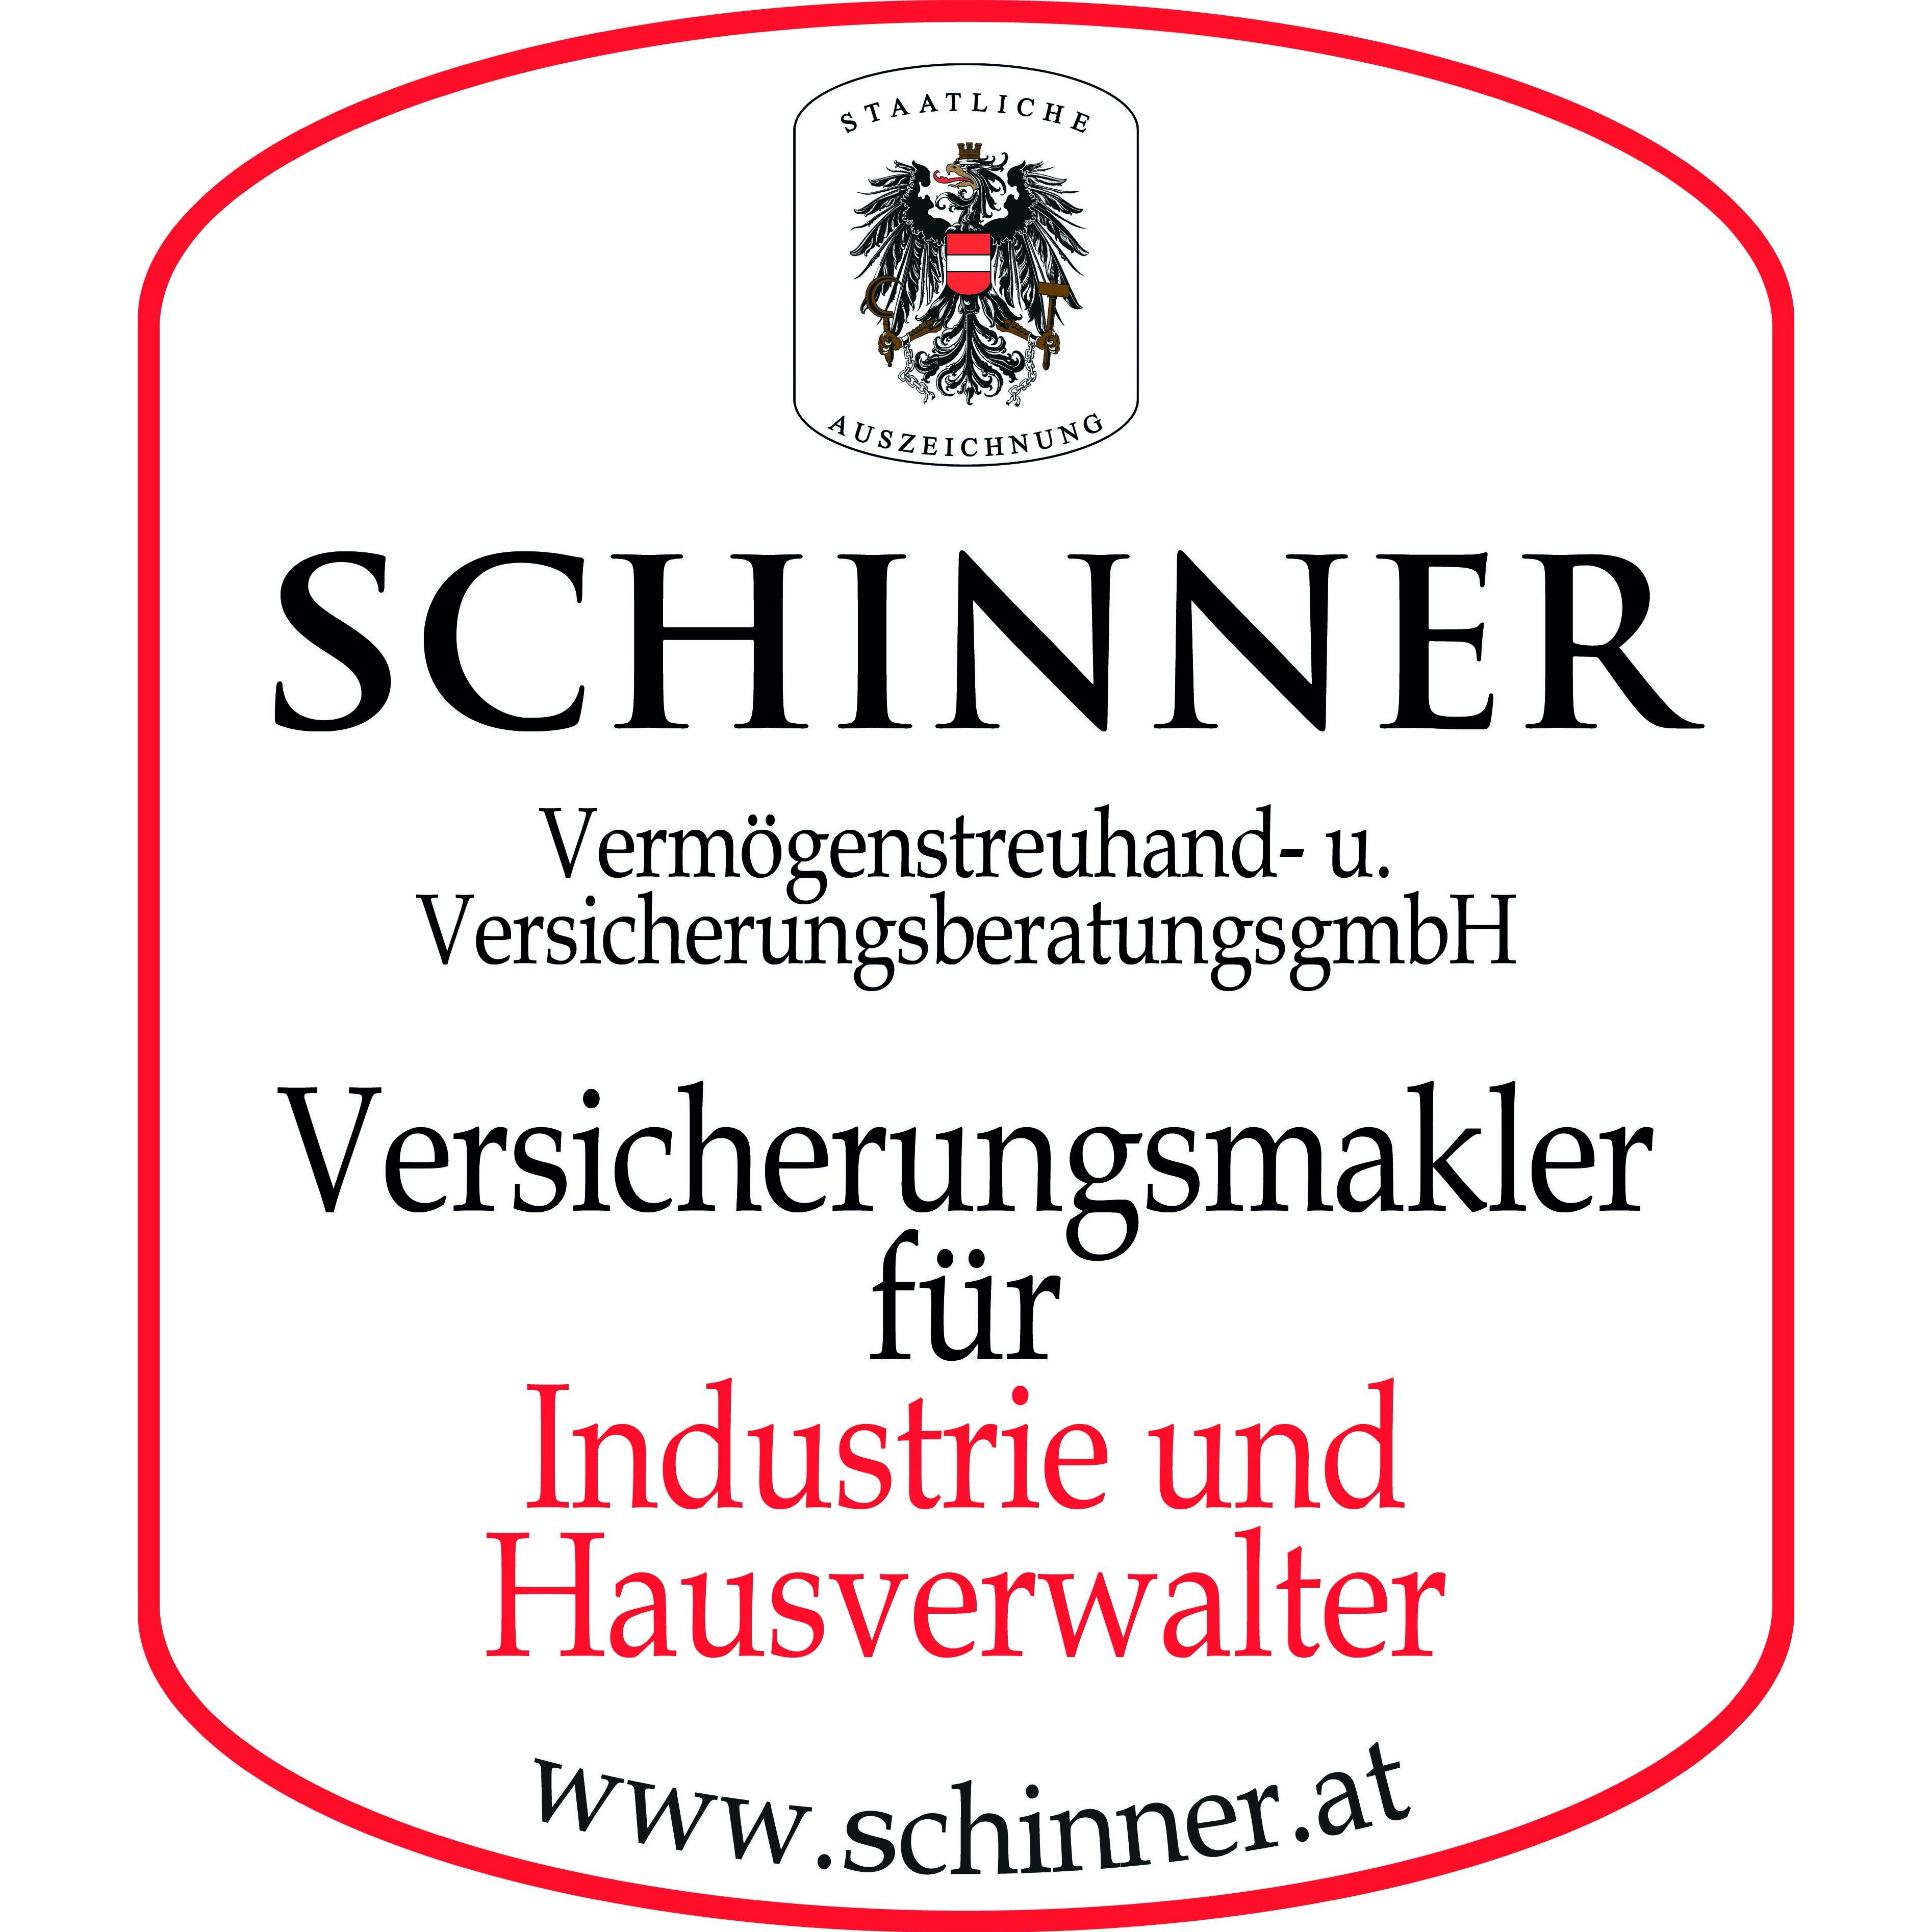 SCHINNER Vermögenstreuhand- und Versicherungsberatungs GmbH Logo